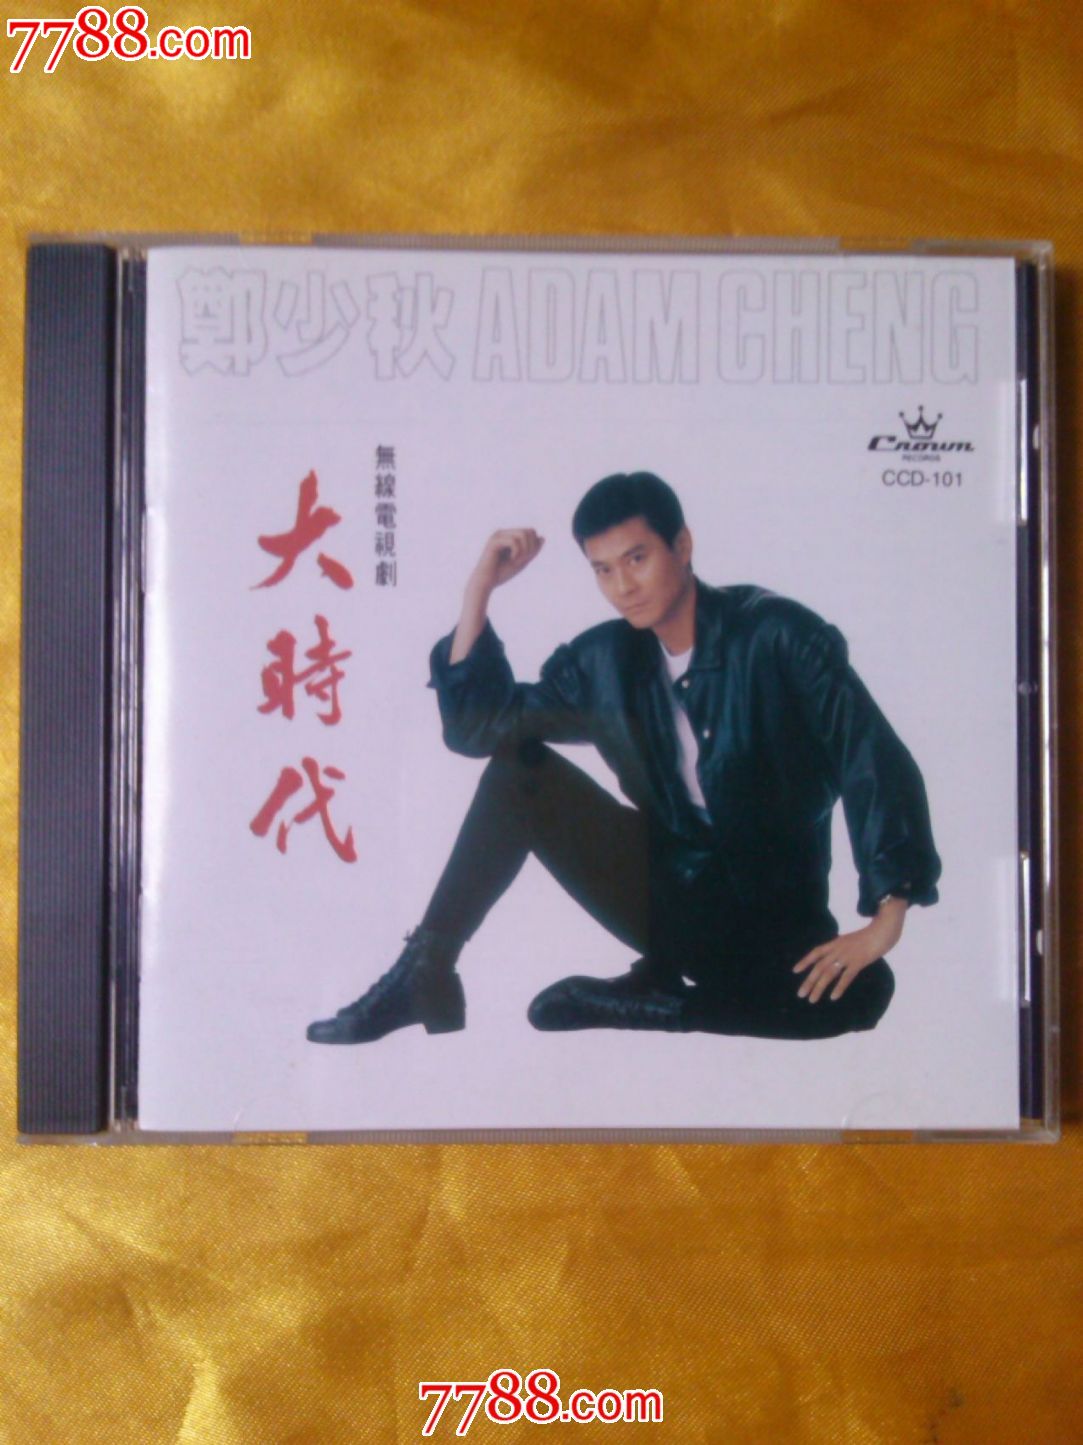 郑少秋【大时代】香港索尼首版CD-价格:160元